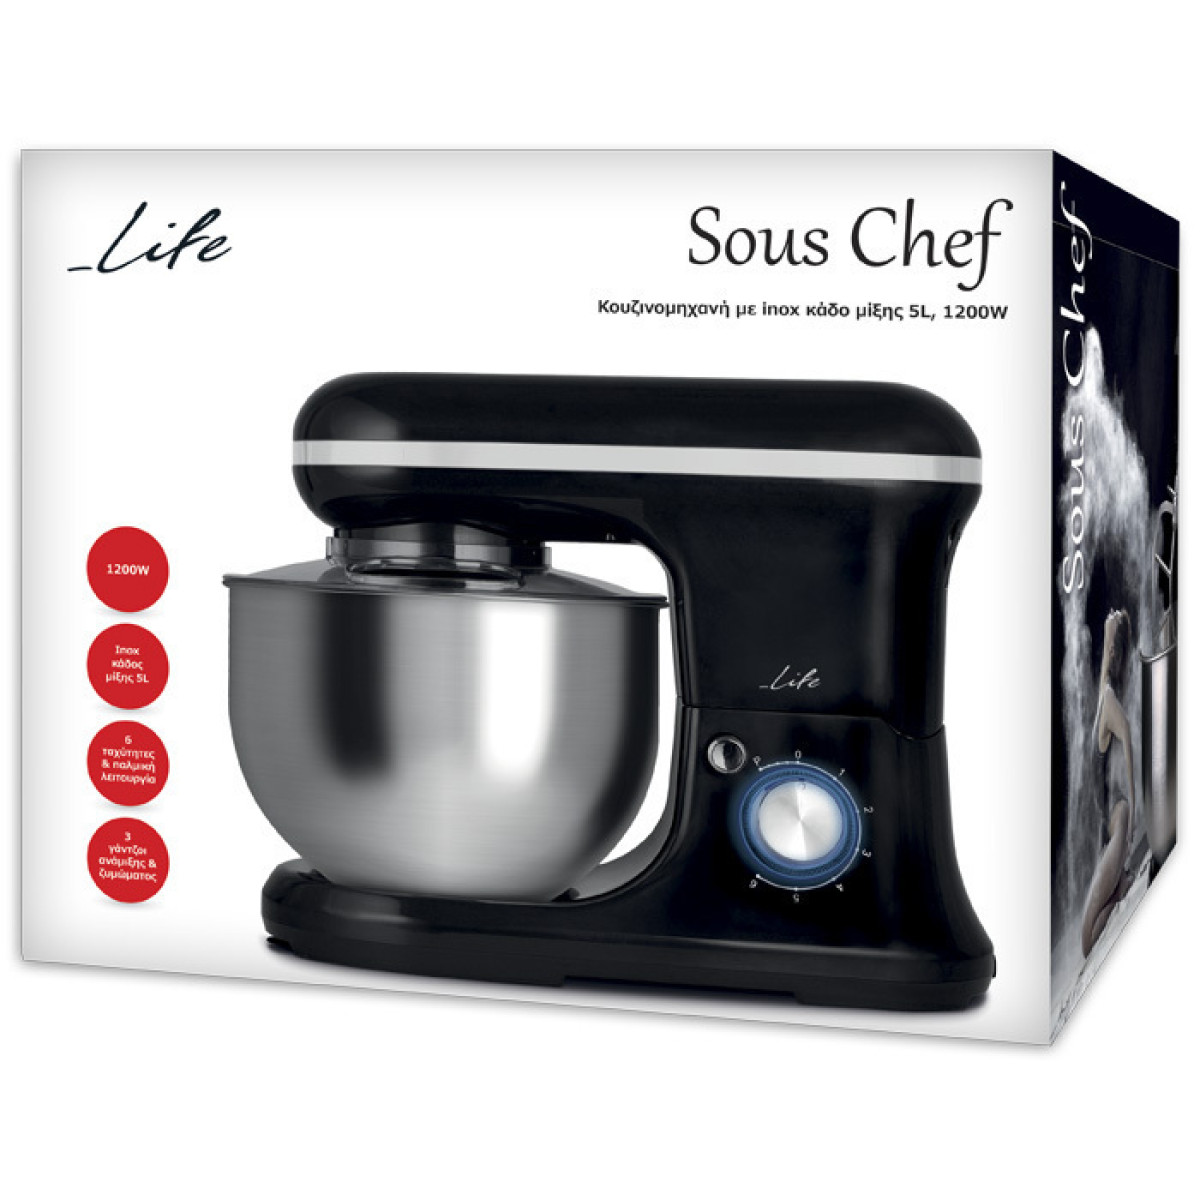 Κουζινομηχανή Life Sous Chef KM-001 1200W με Ανοξείδωτο Κάδο 5lt Προιόντα Μέ Τιμές Μετρητοίς